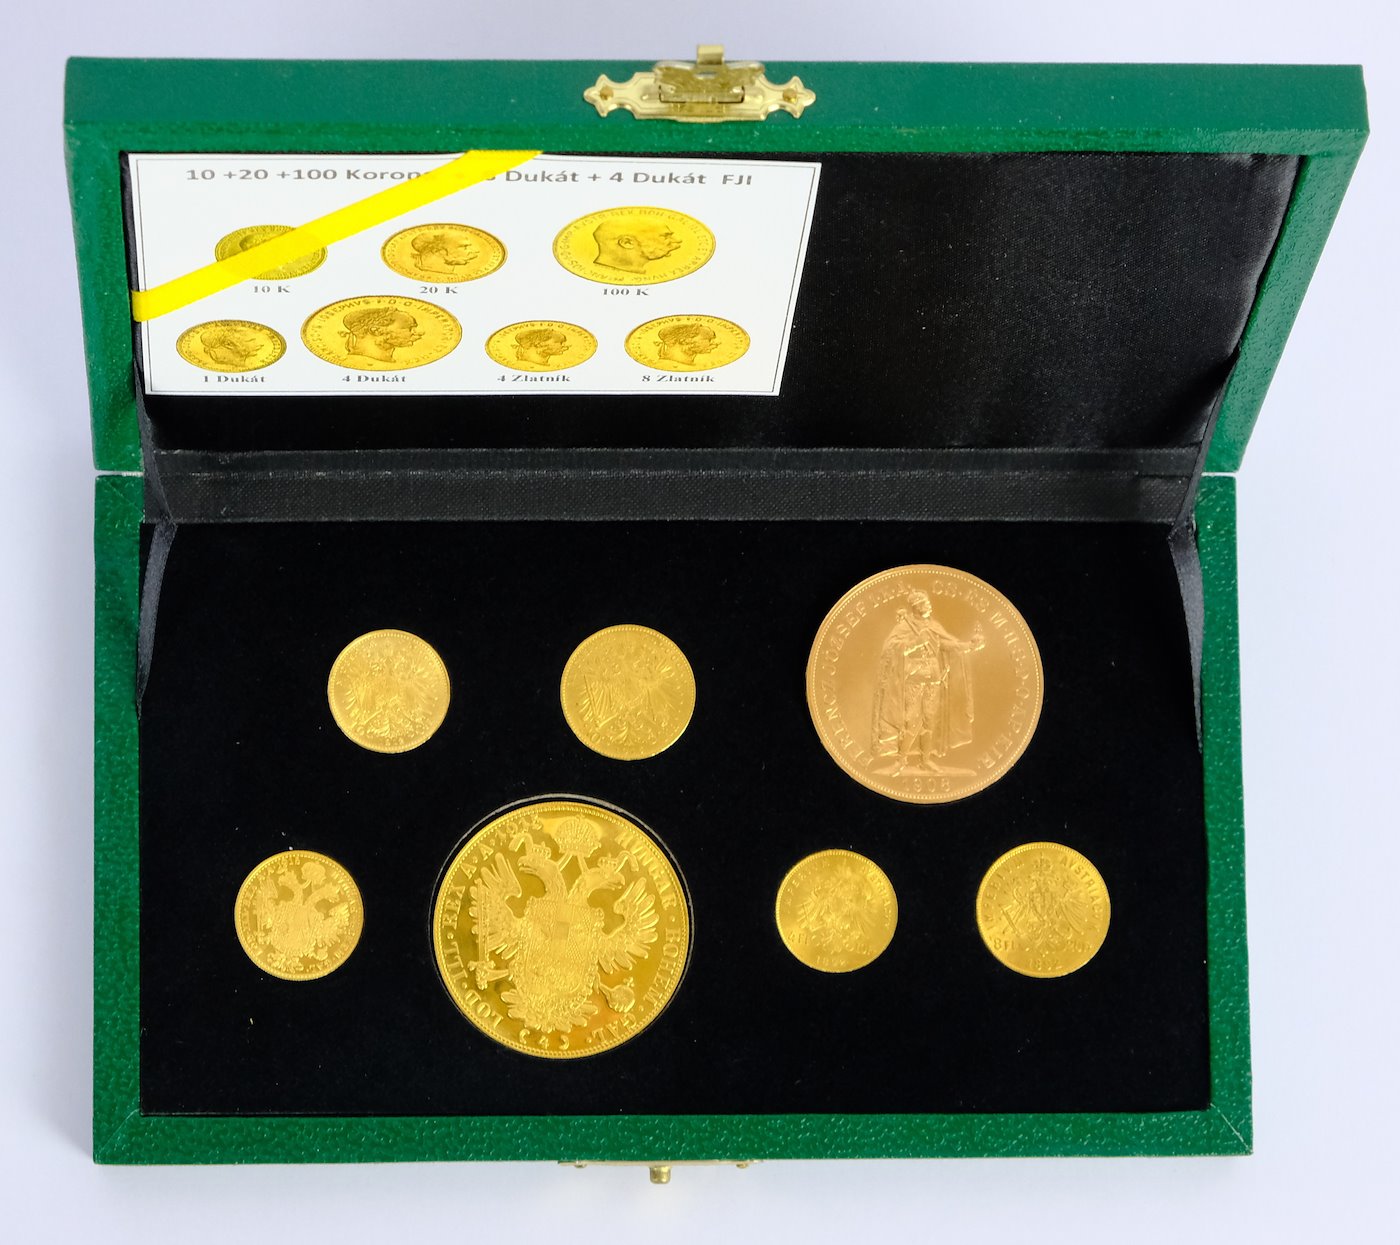 .. - SADA v etue pokračujících ražeb zlatých mincí Vídeňské a Budapešťské mincovny 10,20,100 koruna, 1 a 4 dukát, 4 a 8 zlatník 